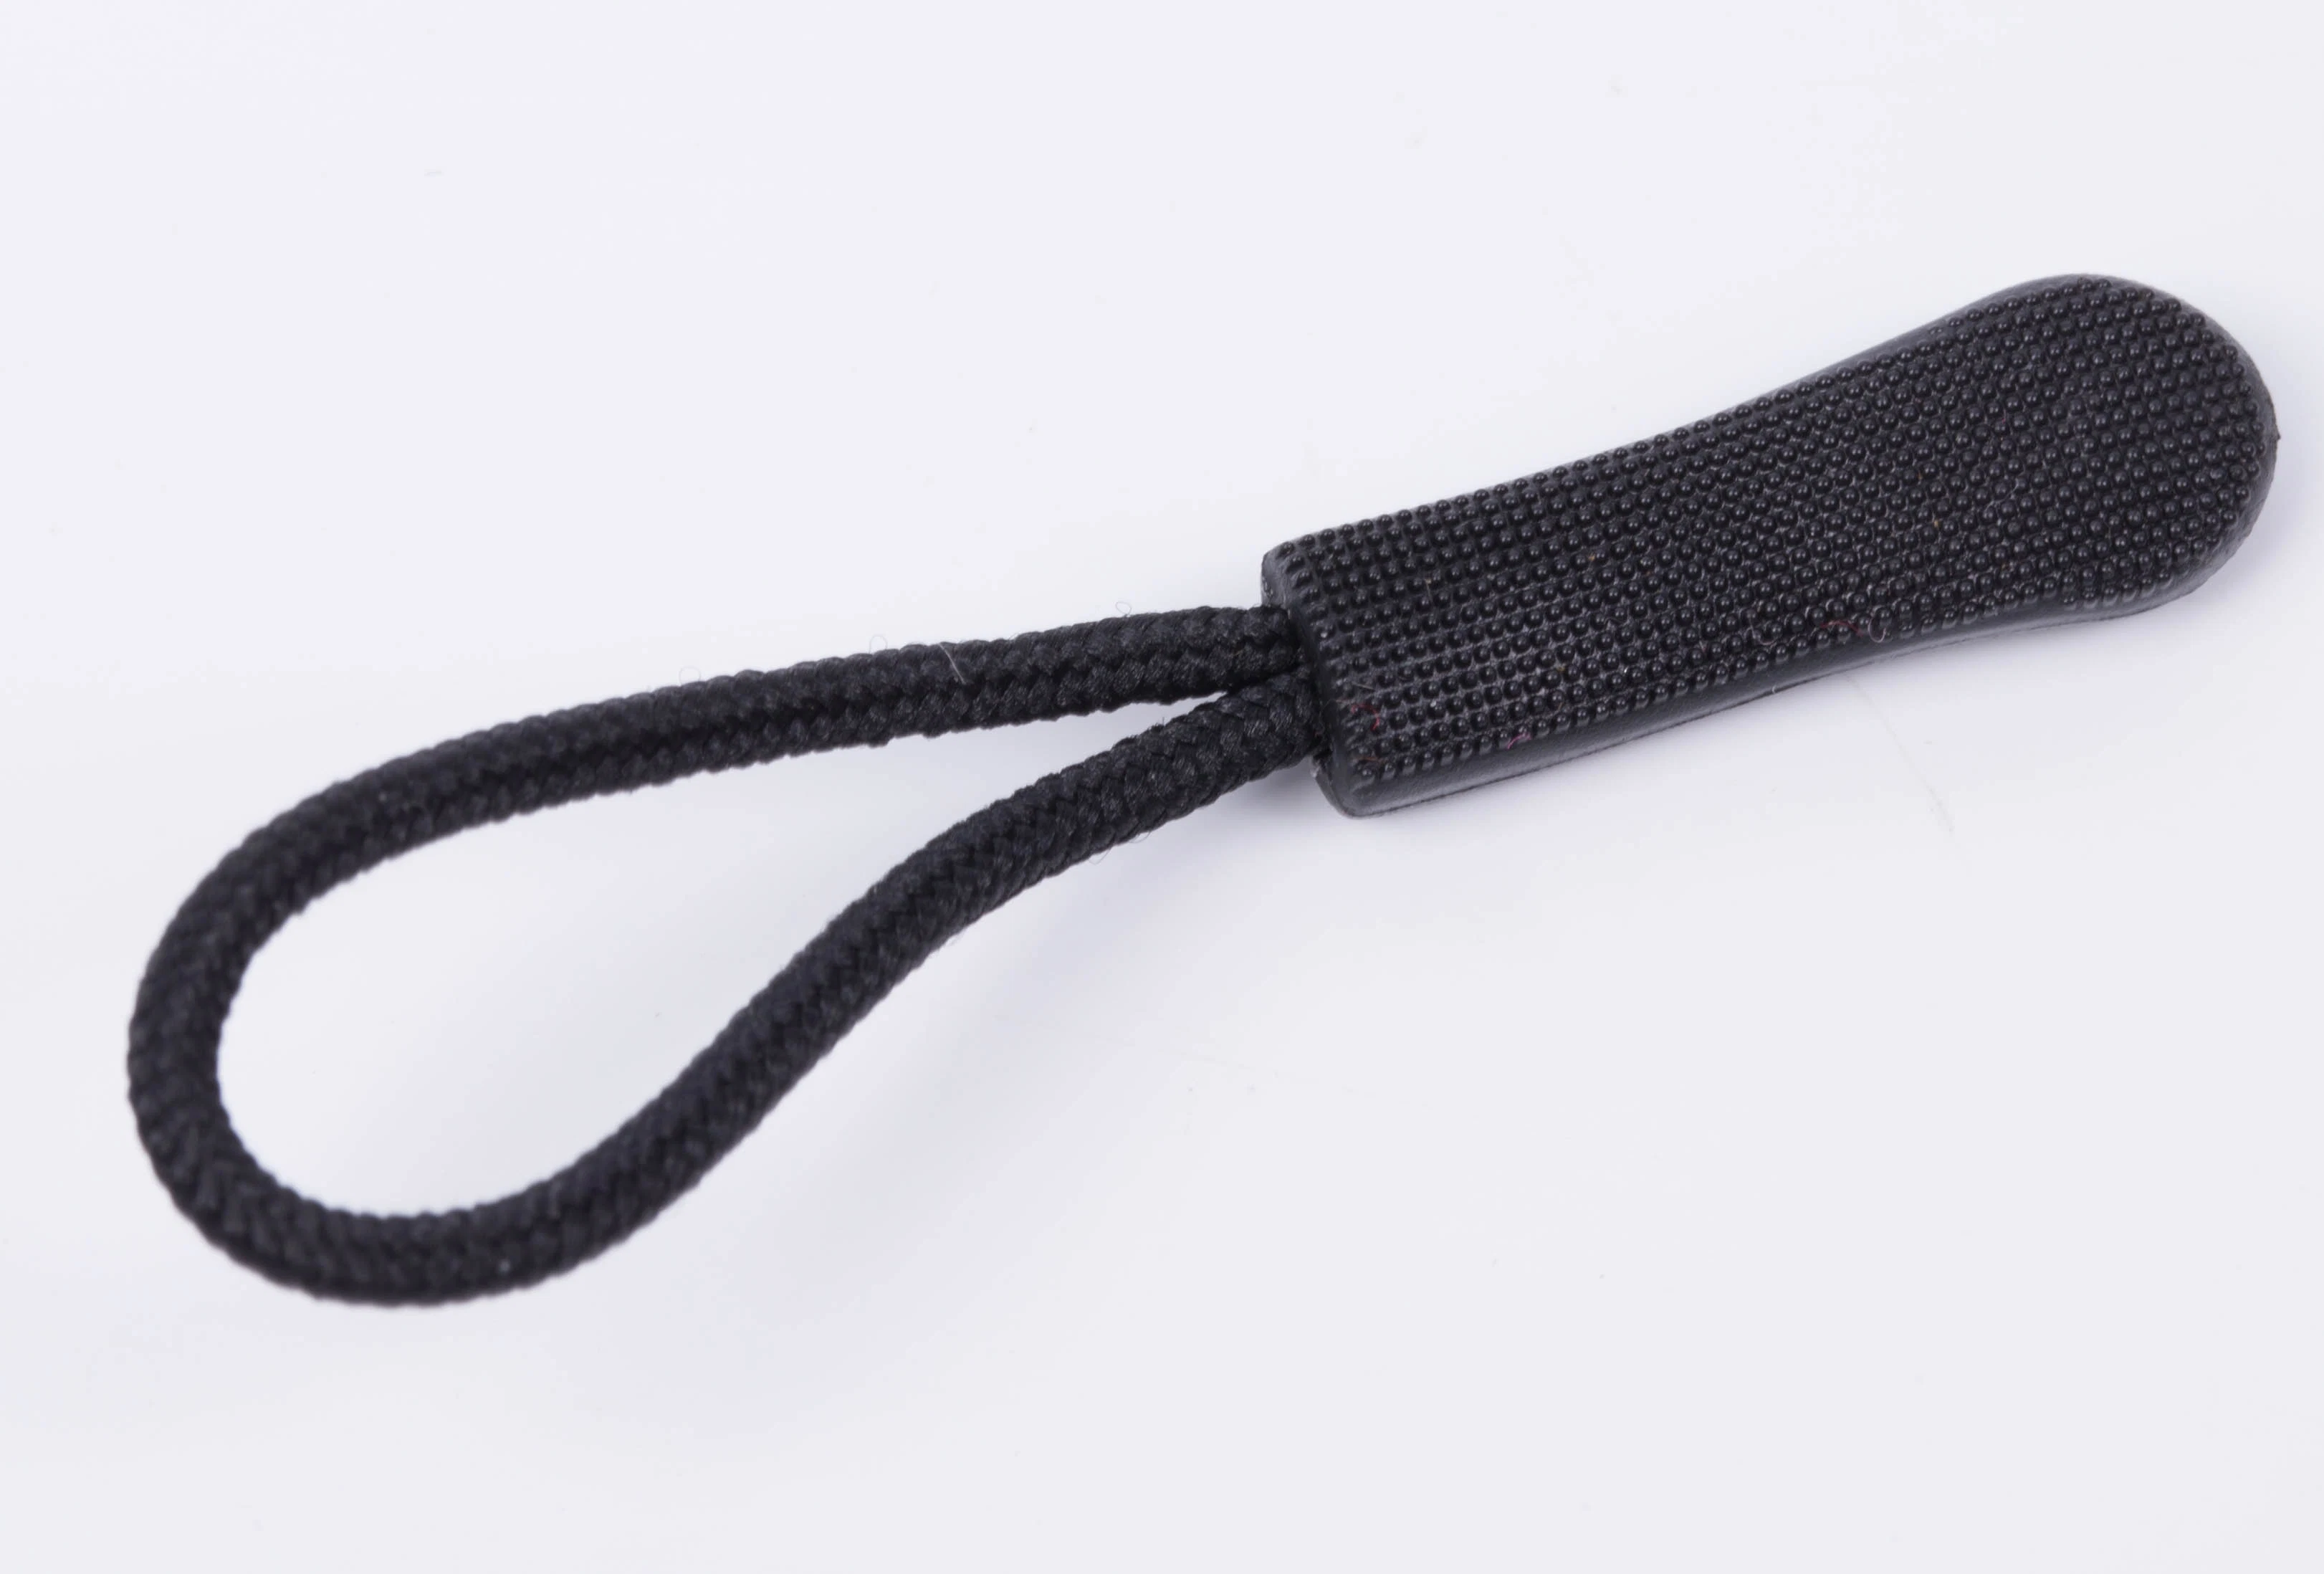 Plastic Zipper Puller for Garments